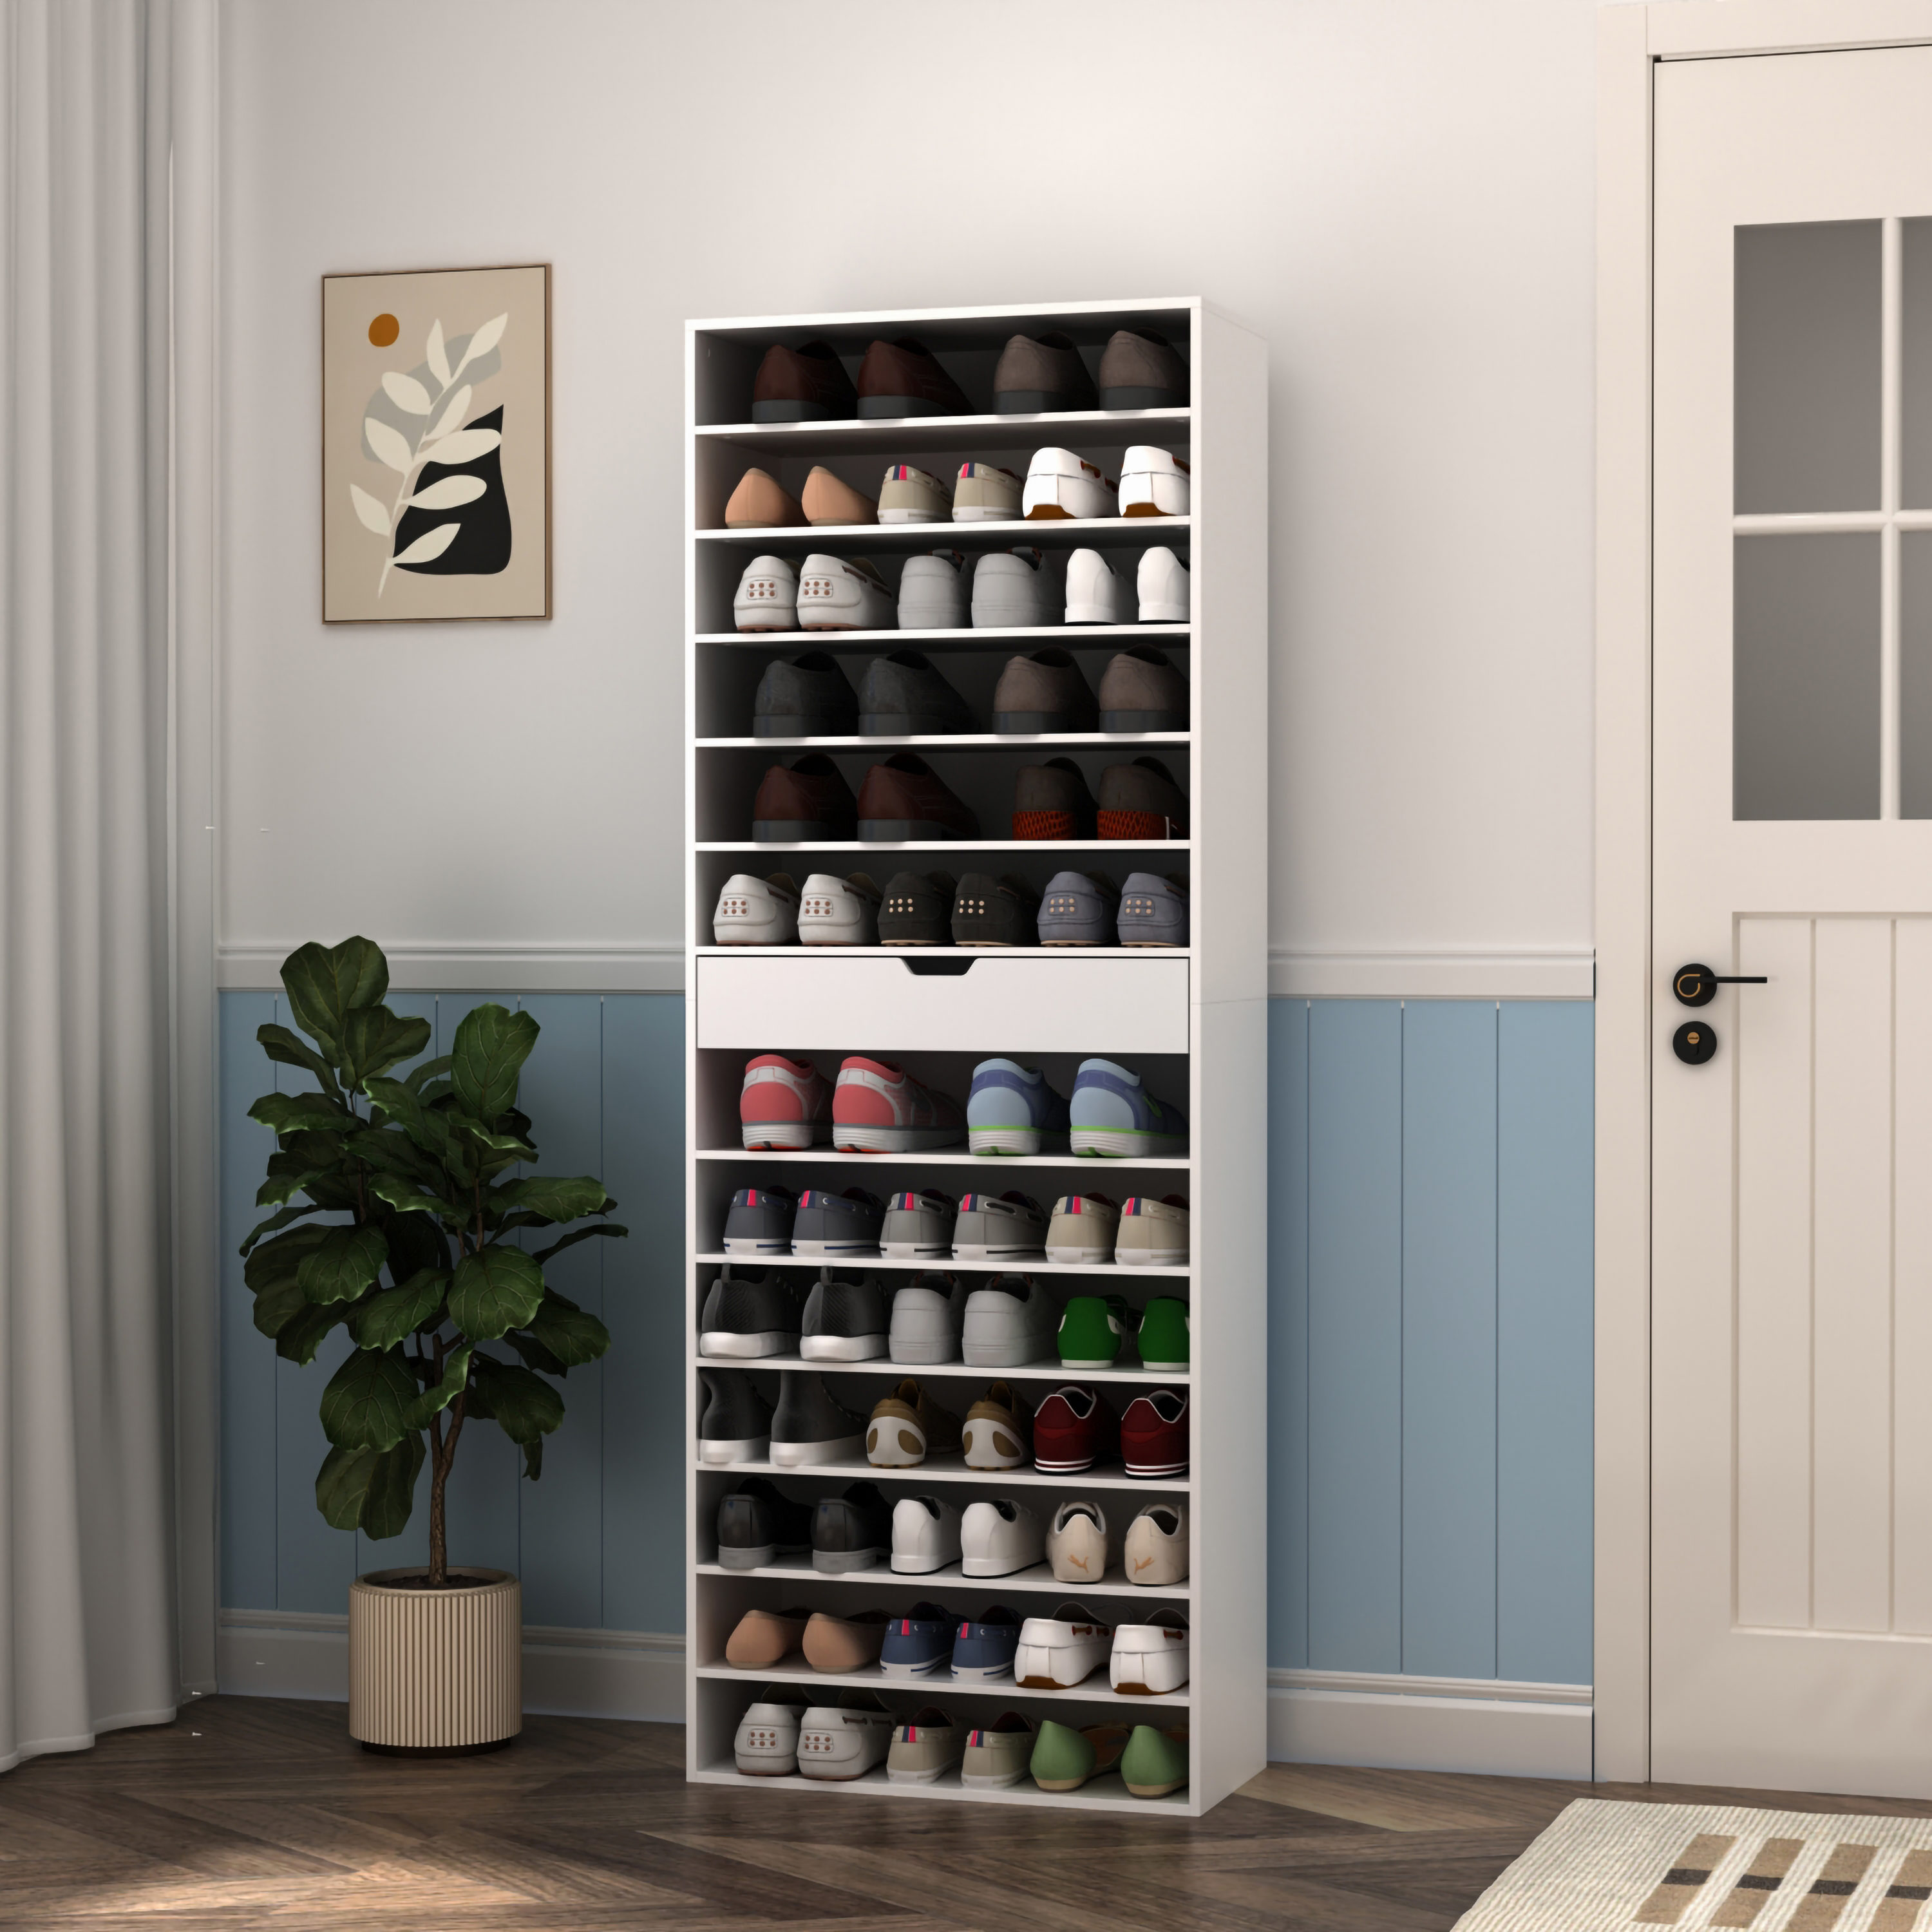 FUFU&GAGA 70.9-in H 8 Tier 14 Pair Black Wood Shoe Cabinet